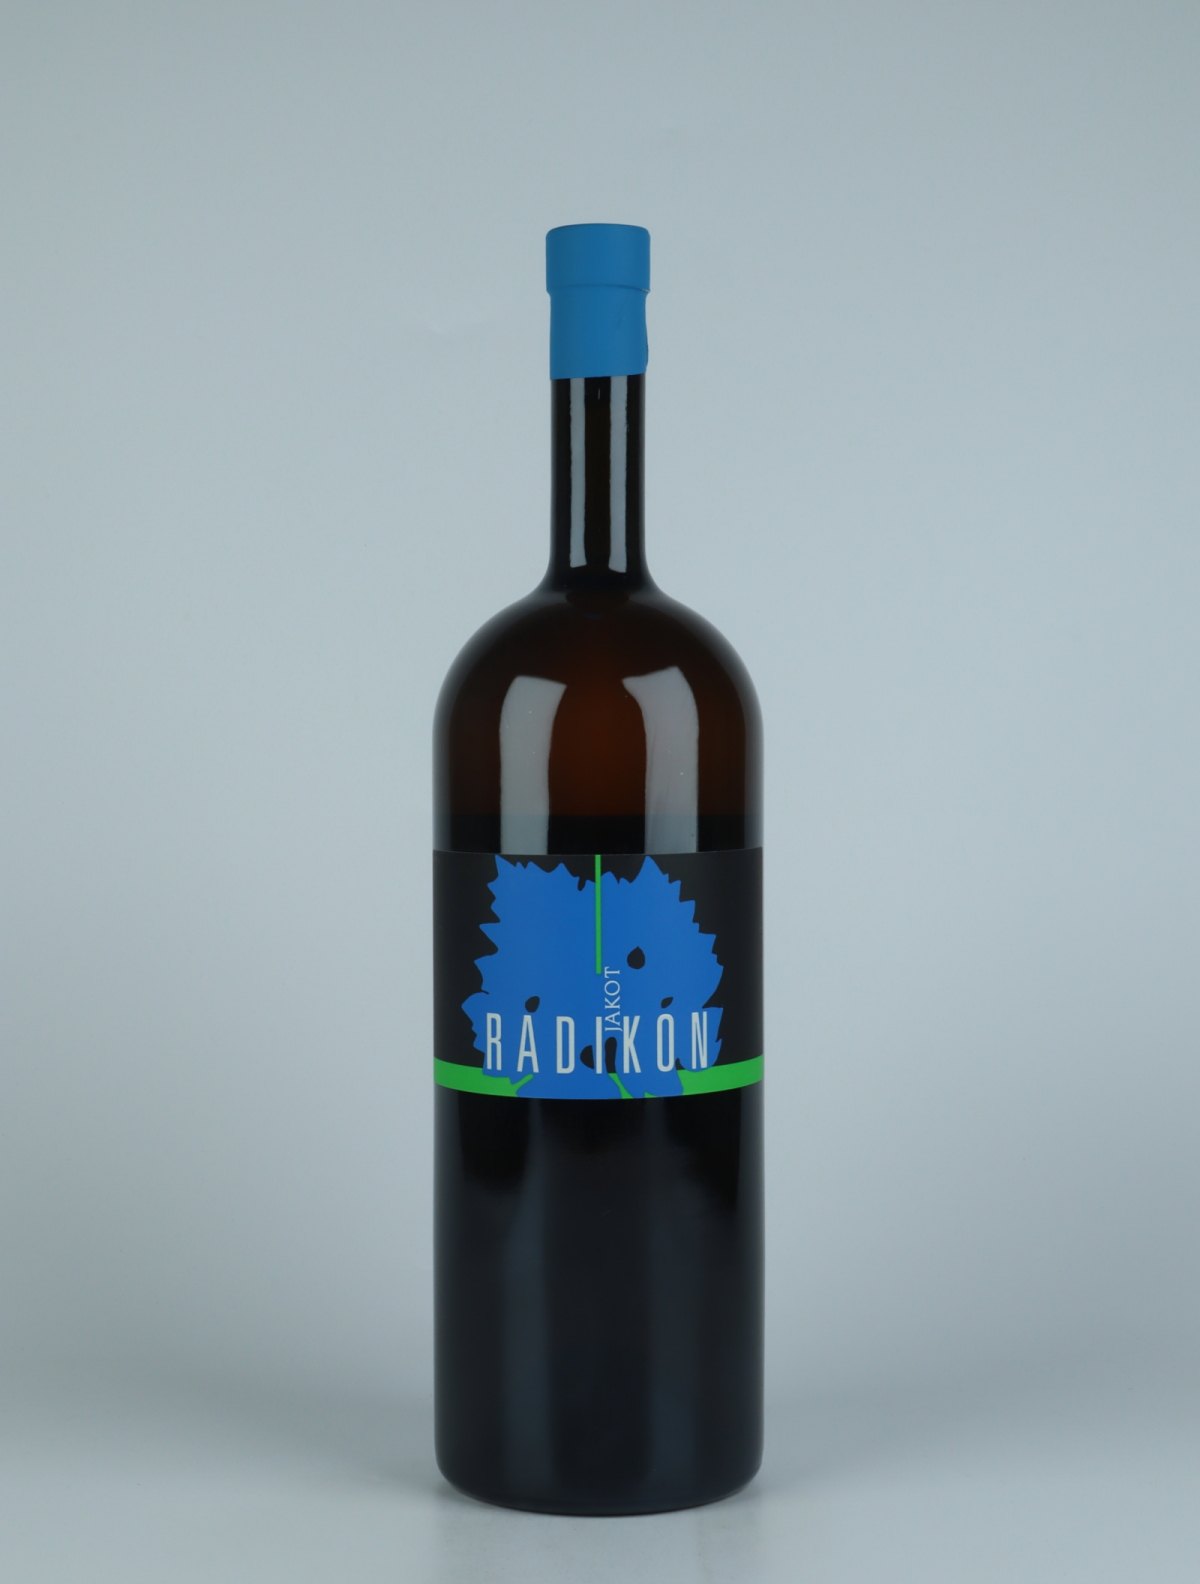 A bottle 2017 Jakot Orange wine from Radikon, Friuli in Italy